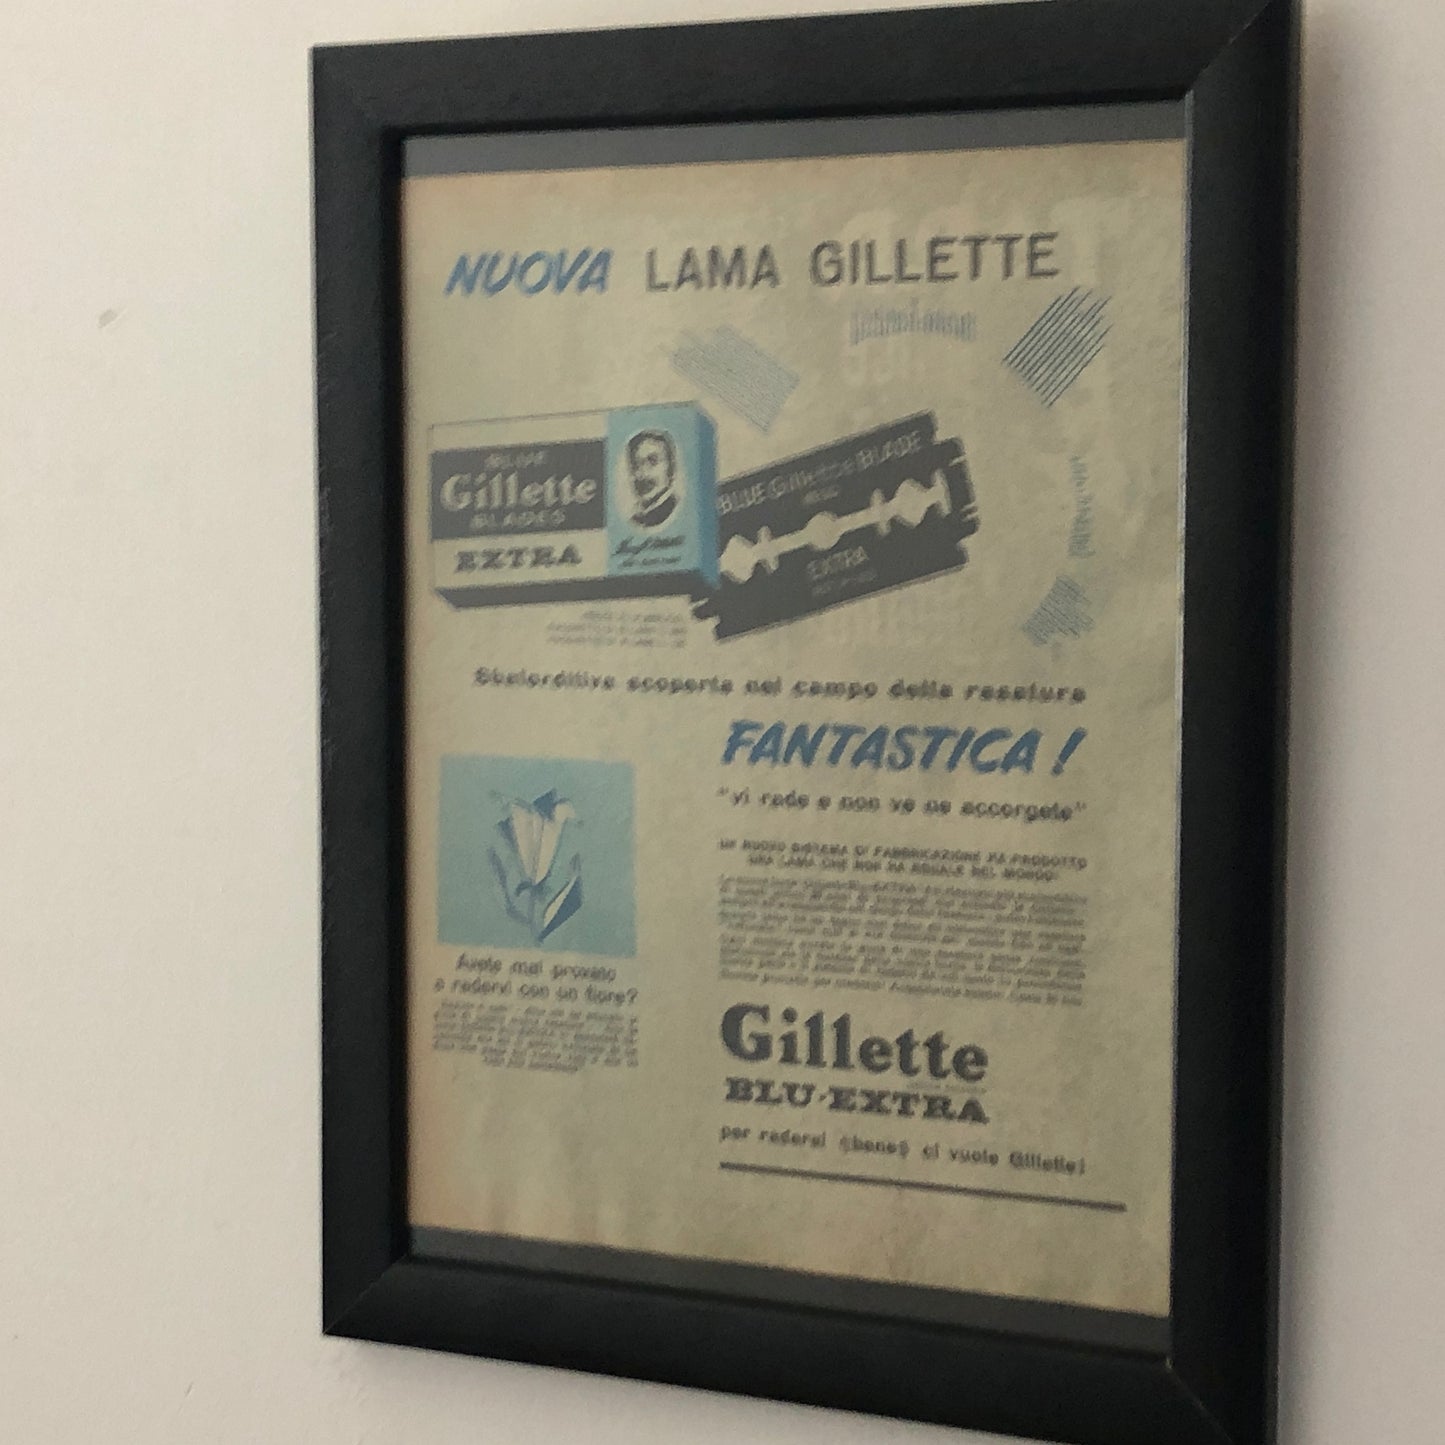 Gillette, Pubblicità Anno 1960 Nuova Lama Gillette con Didascalia in Italiano